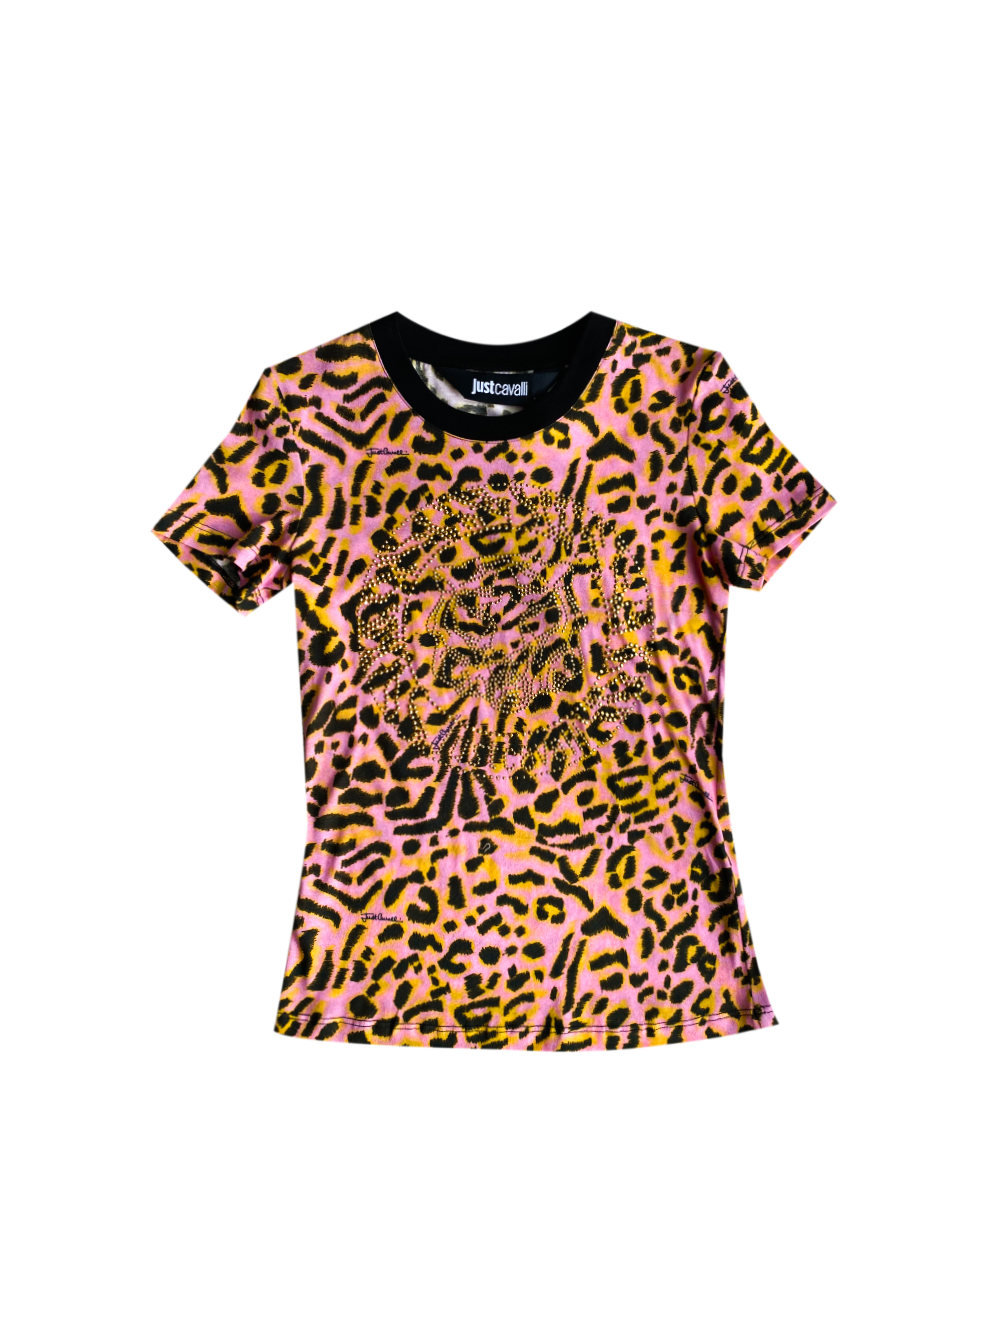 JUST CAVALLI Jaguar print embellished pink leopard logo T-shirt S